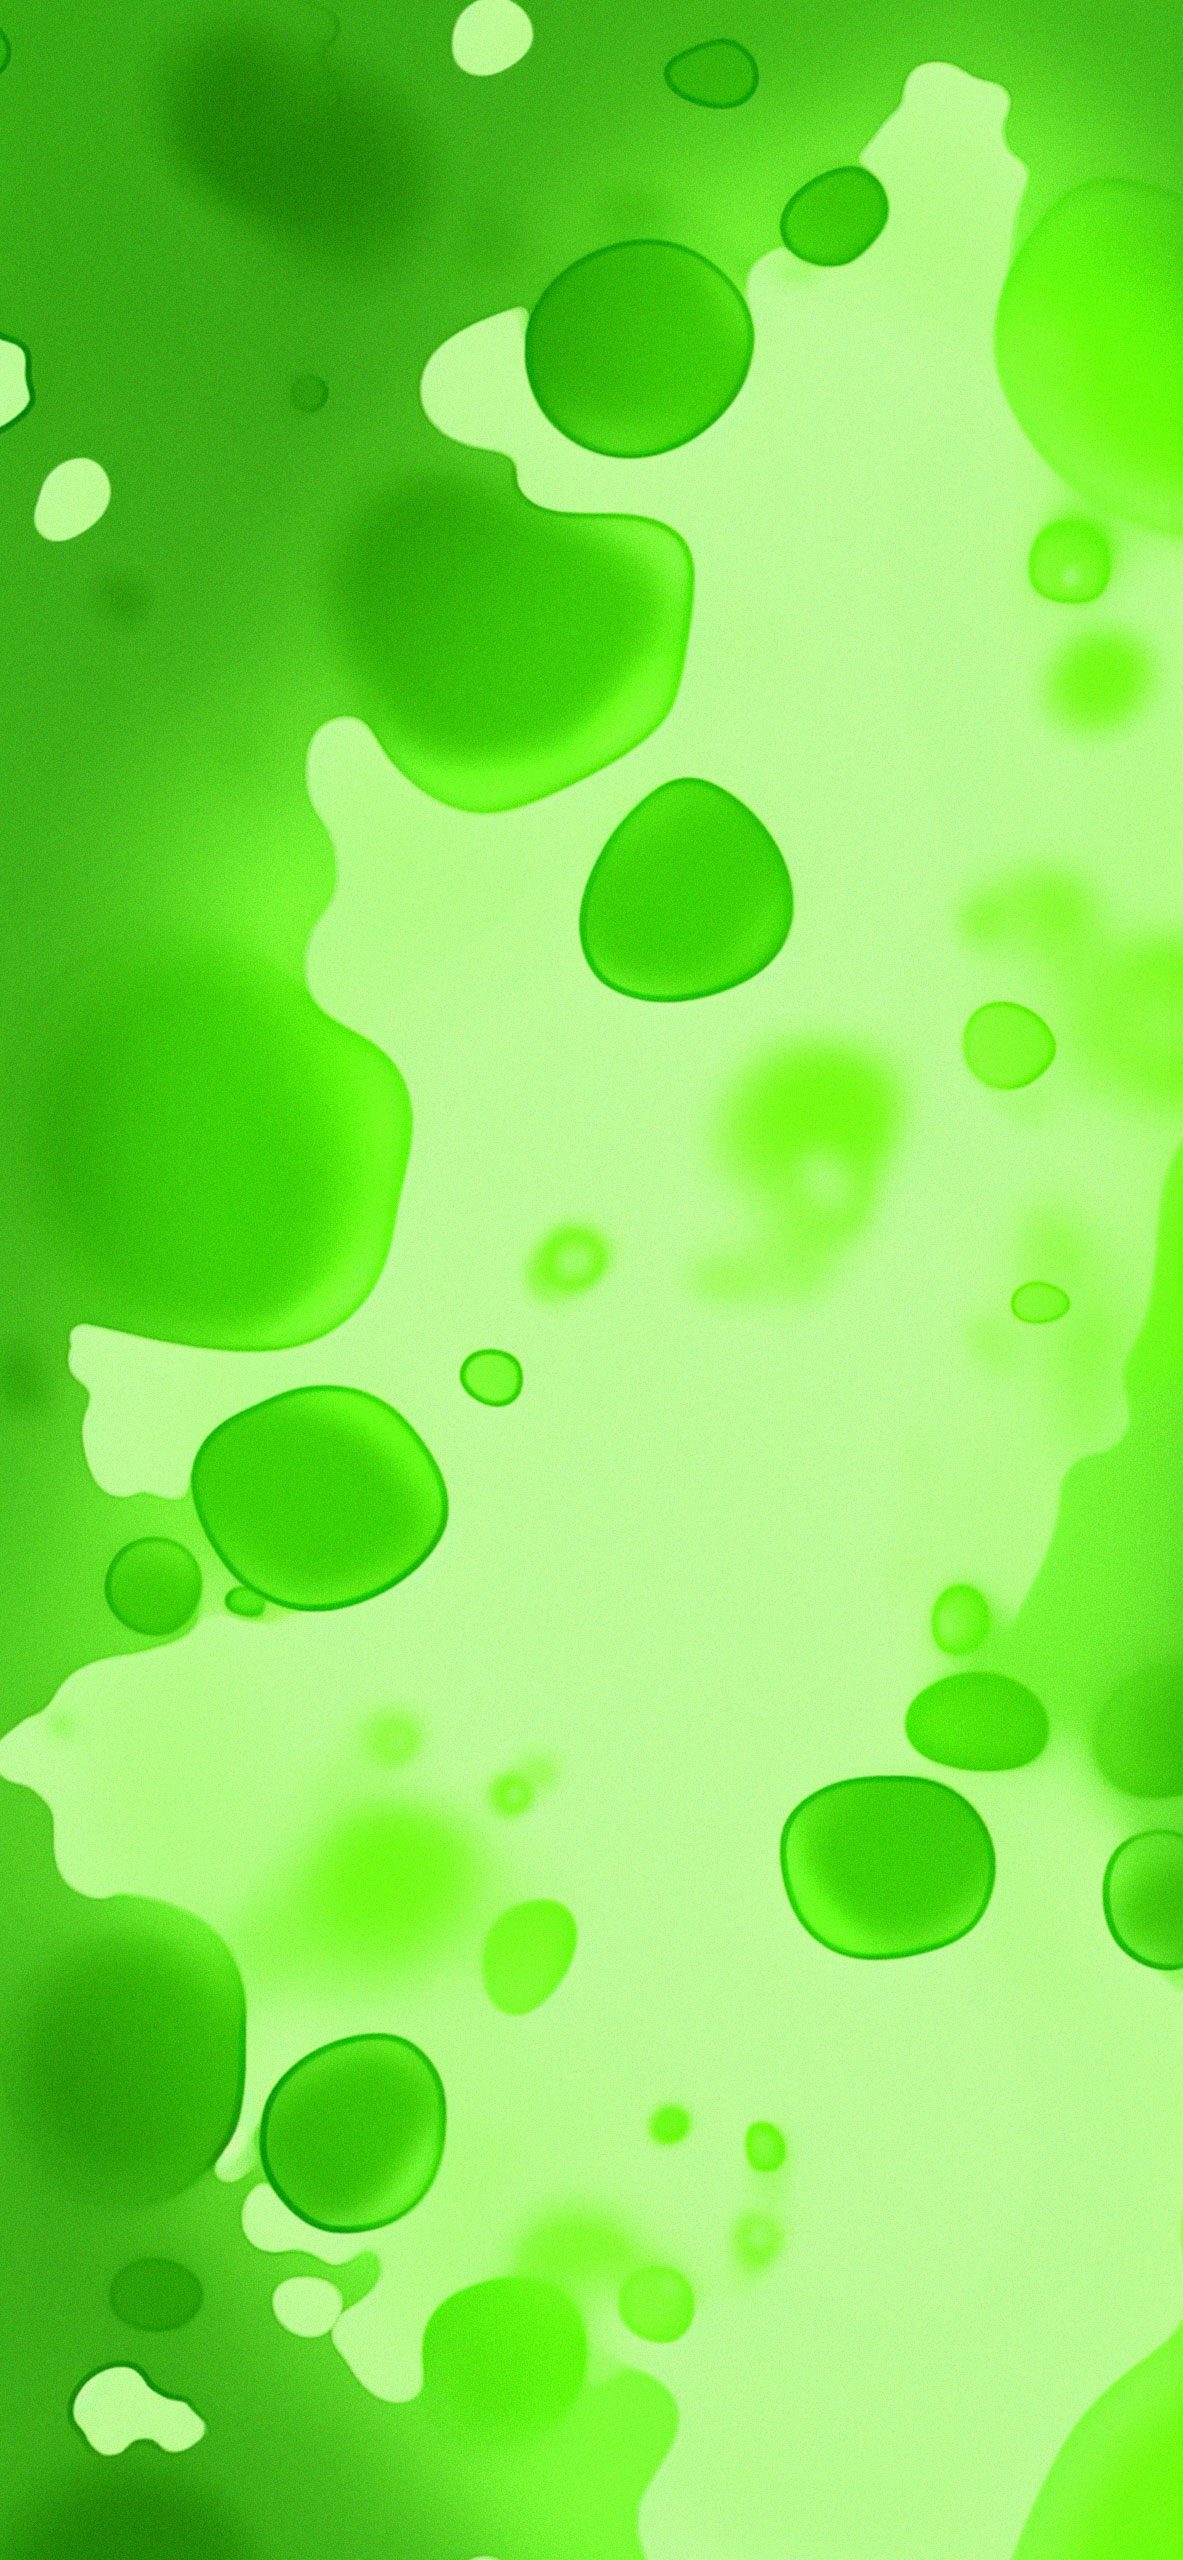 Green acid toxic wallpaper Neon green bubbles wallpaper for ip